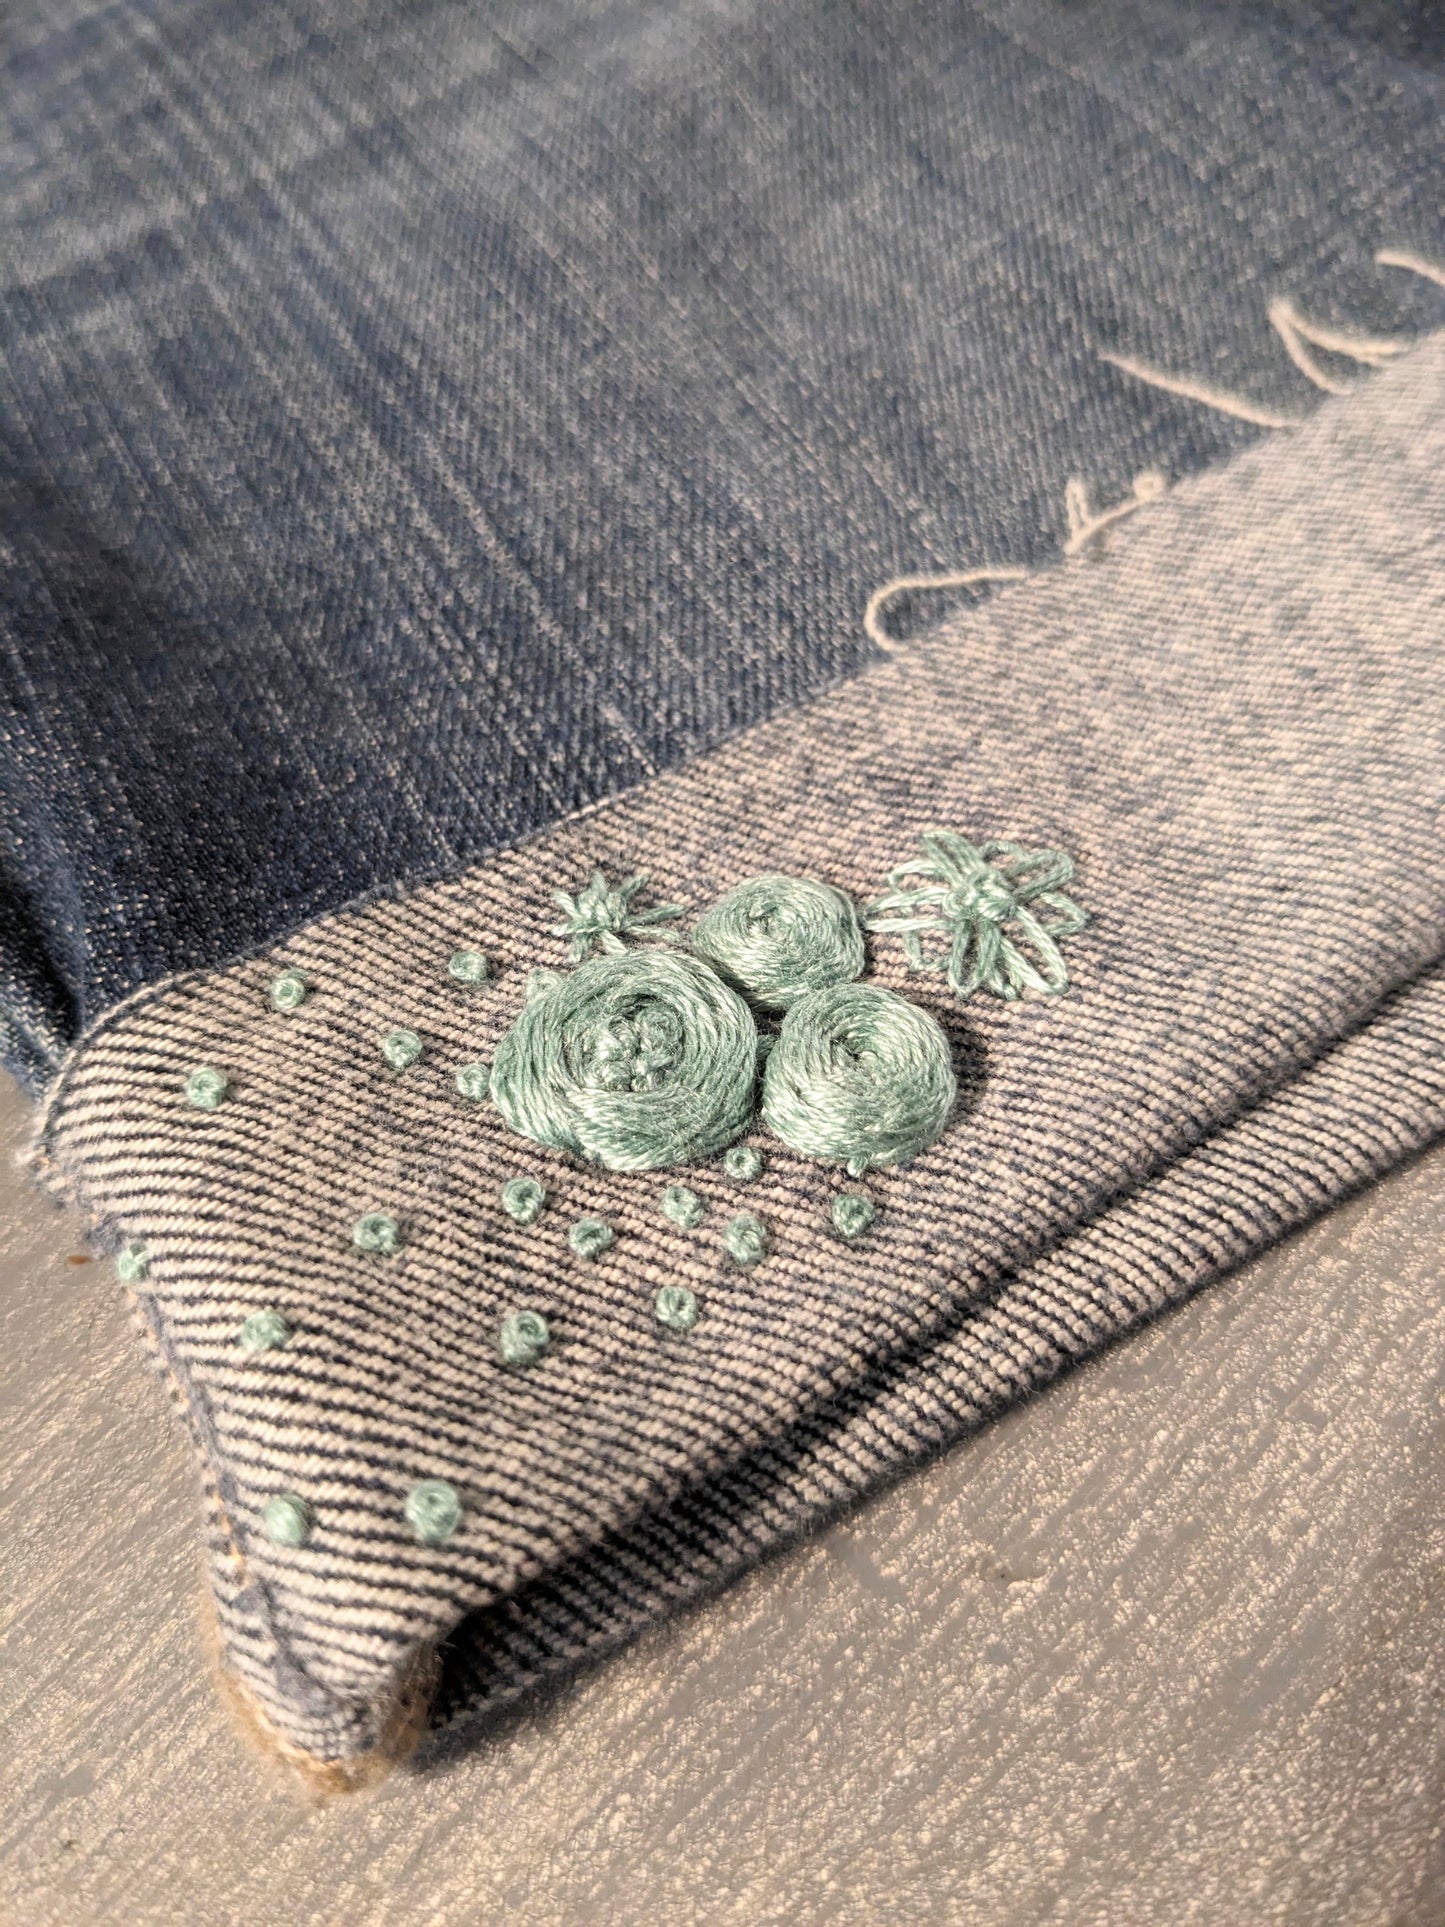 Hand-embroidered under-belly panel 4.5" cuffed hem denim shorts, Medium wash